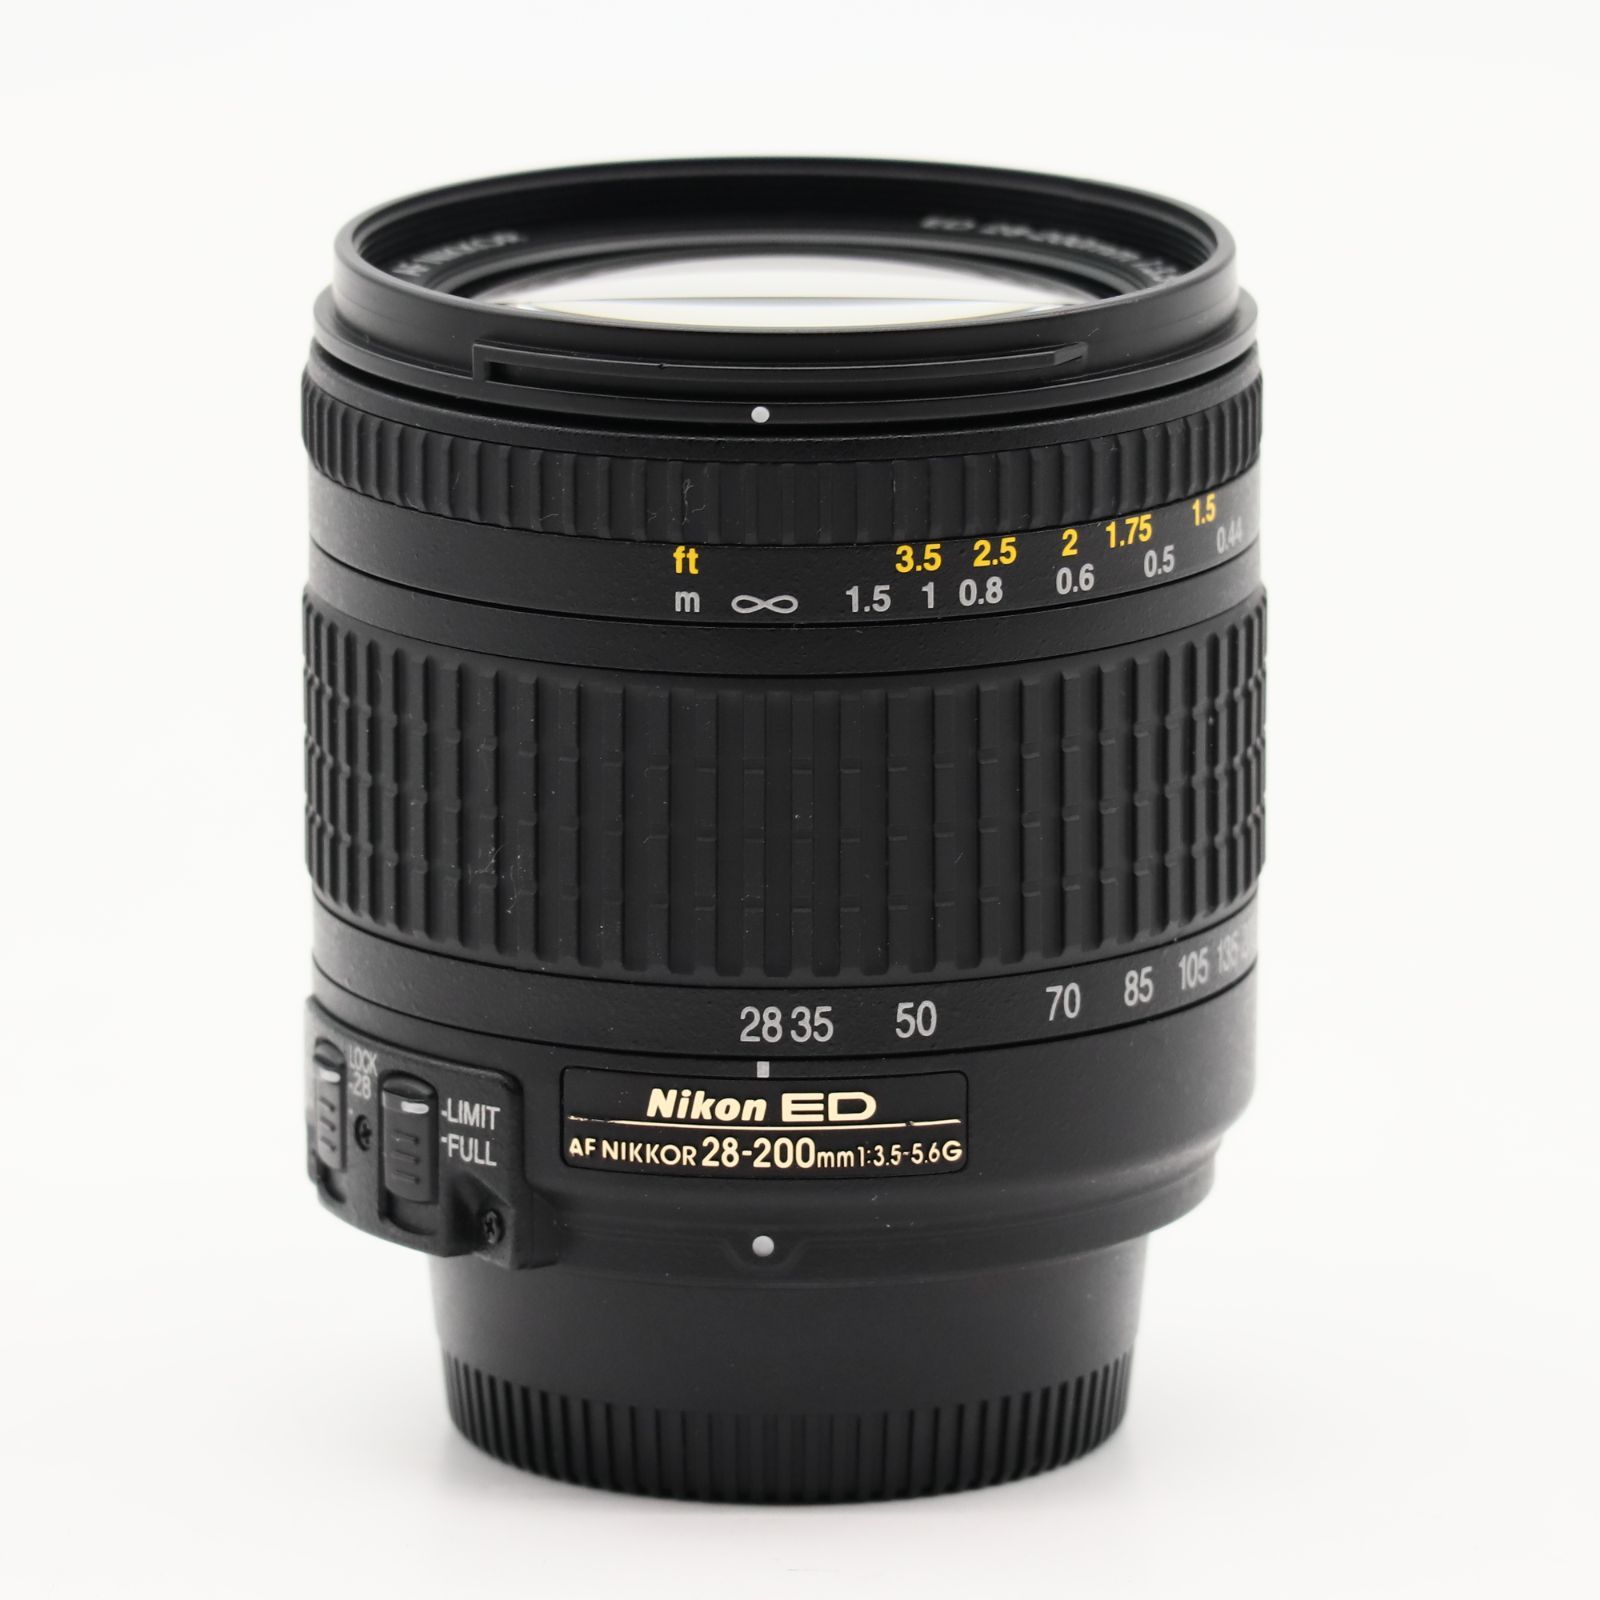 Nikon AFレンズ 28-200mm F3.5-5.6G ED ブラック #3421 - メルカリ